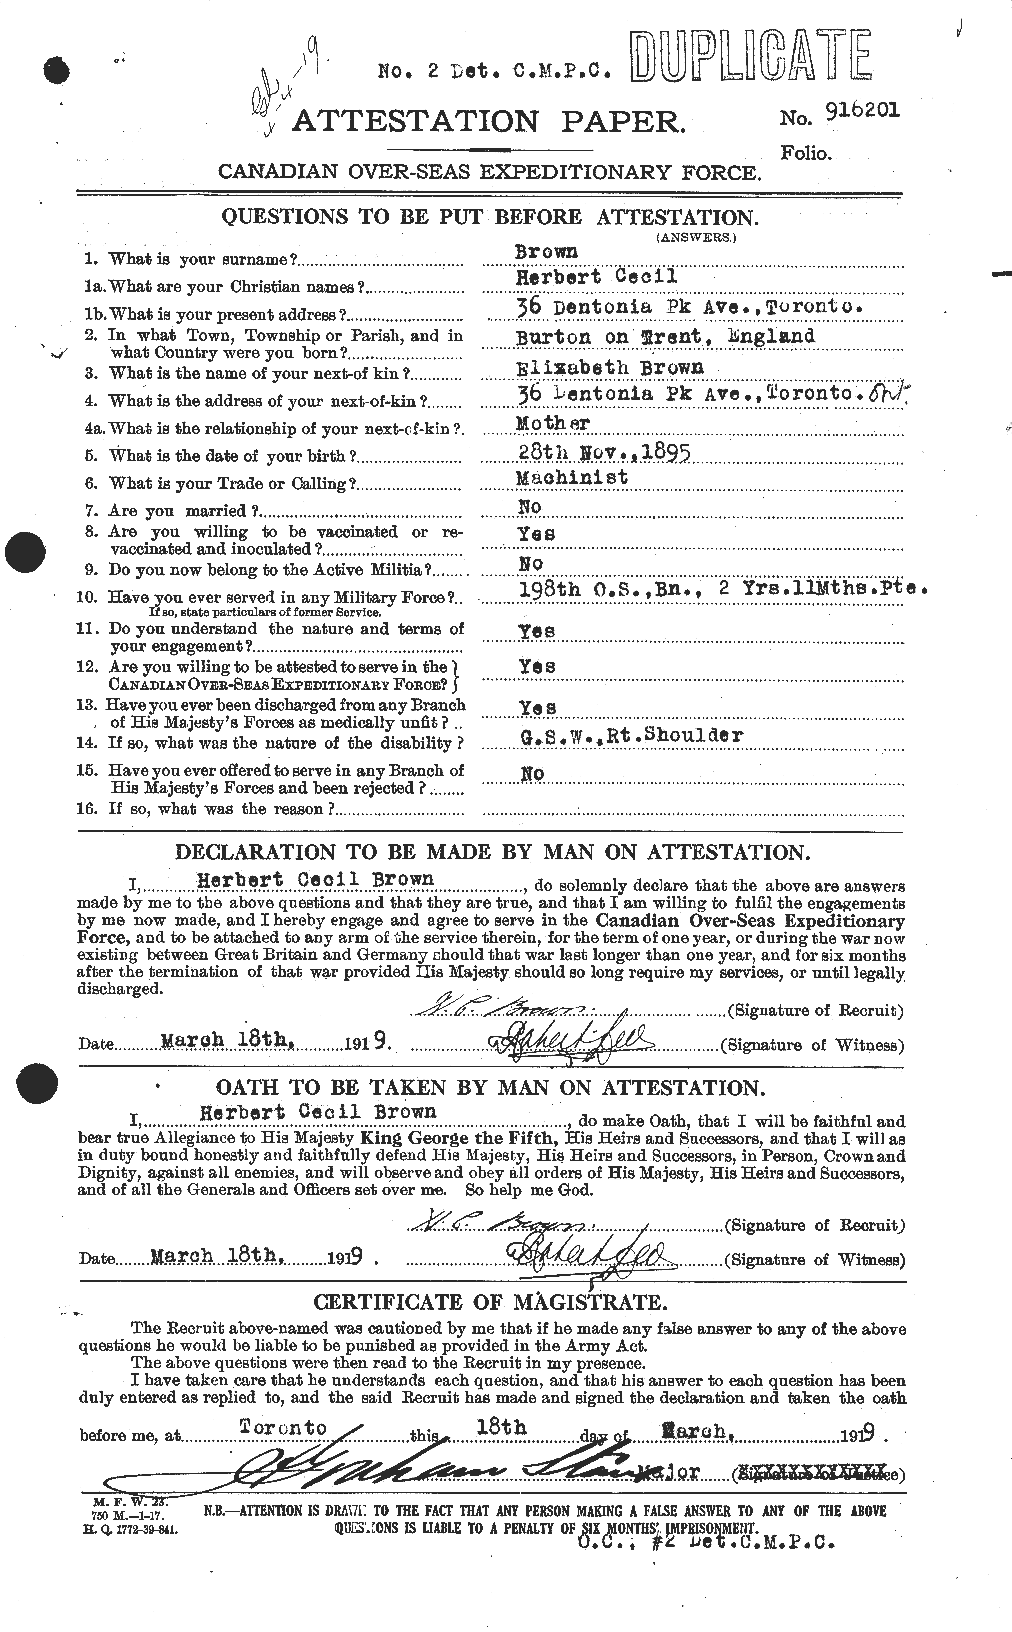 Dossiers du Personnel de la Première Guerre mondiale - CEC 265563a